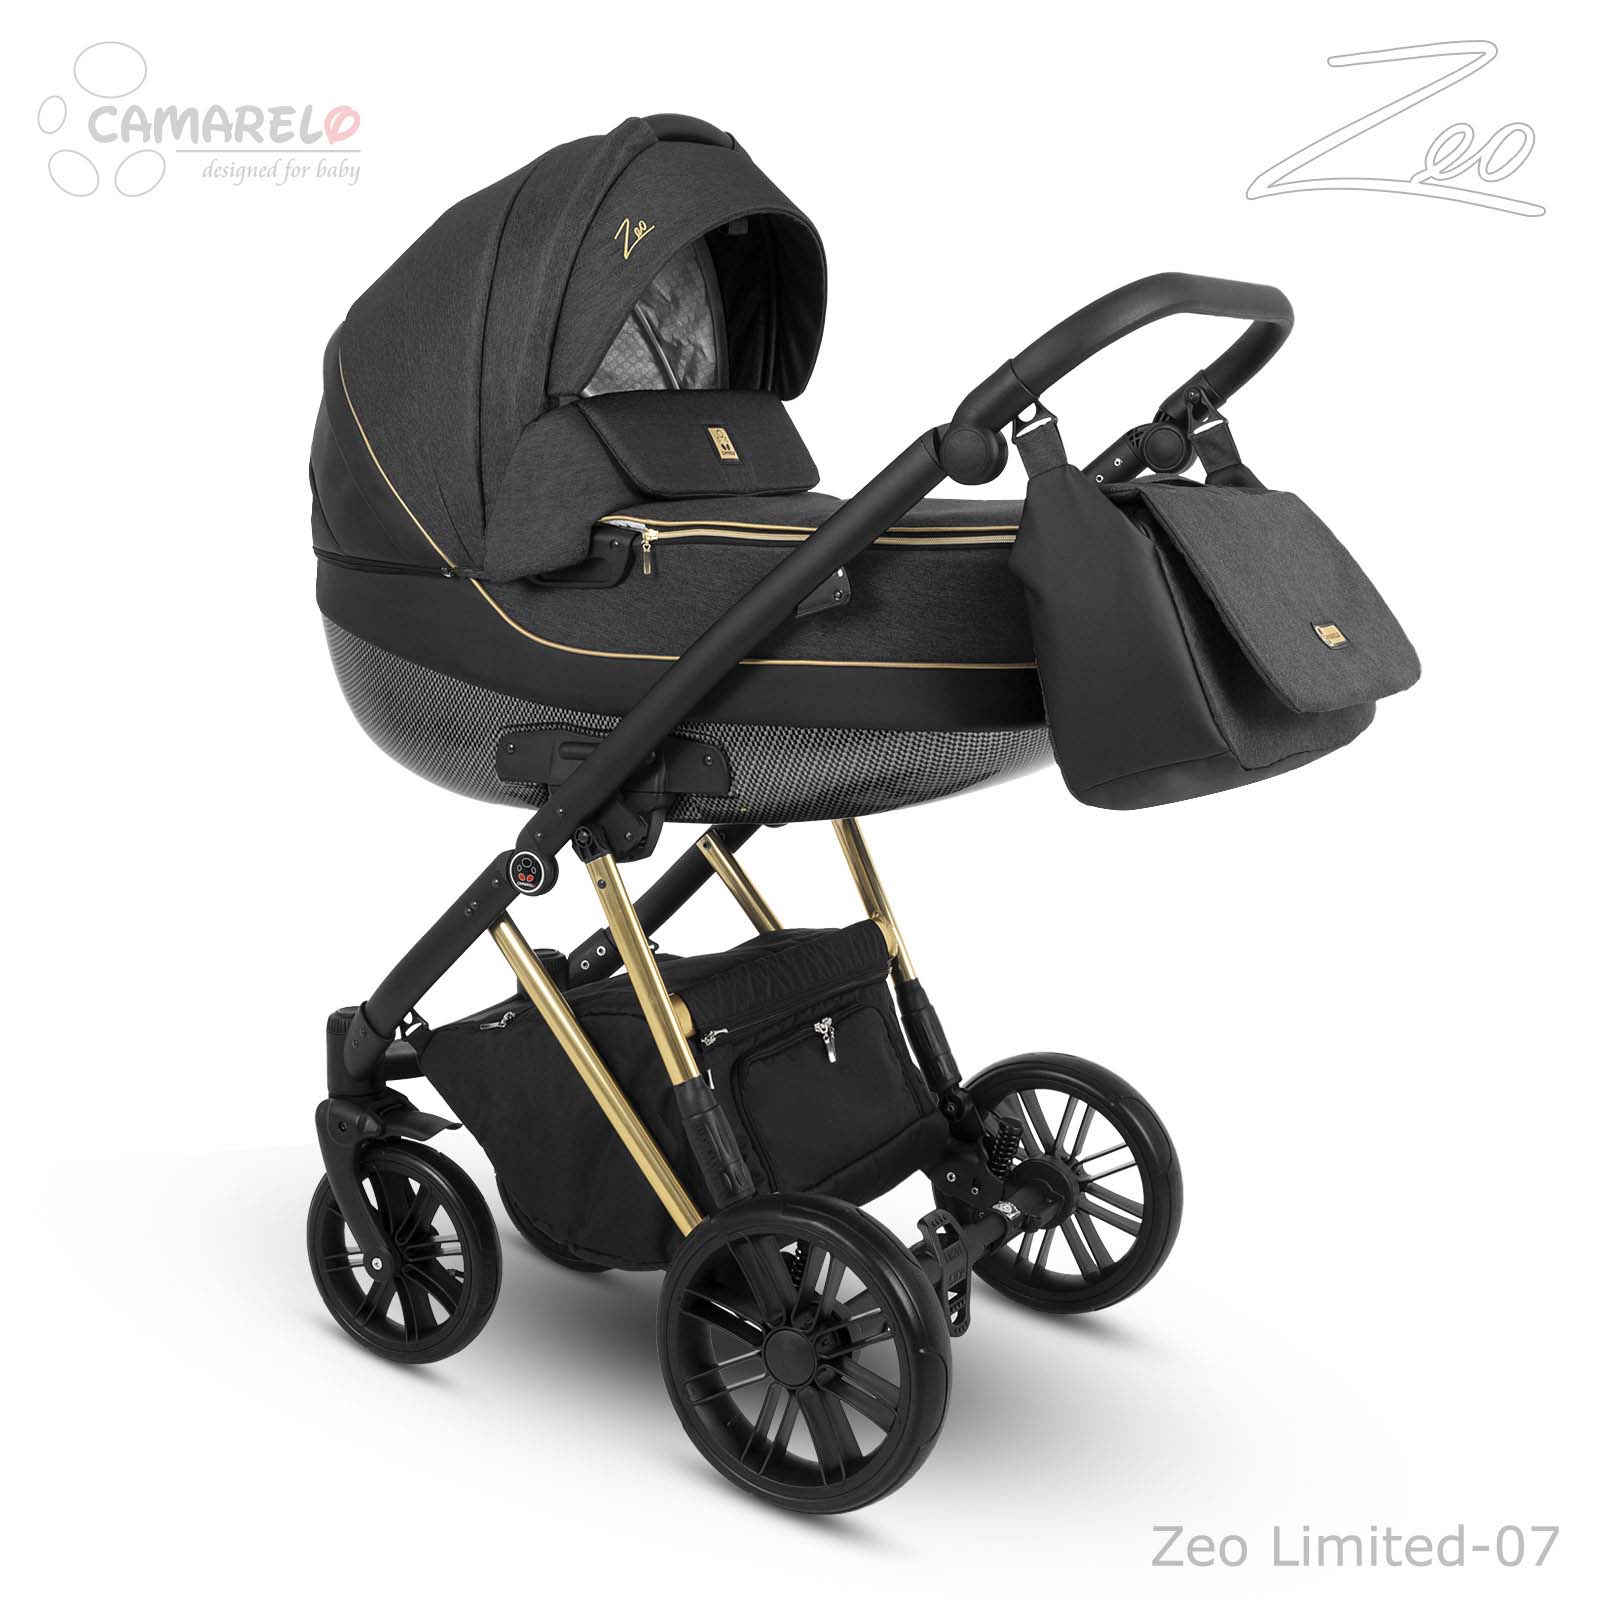 Dětský kočárek Camarelo Zeo Limited Edition, Zeo Limited-07